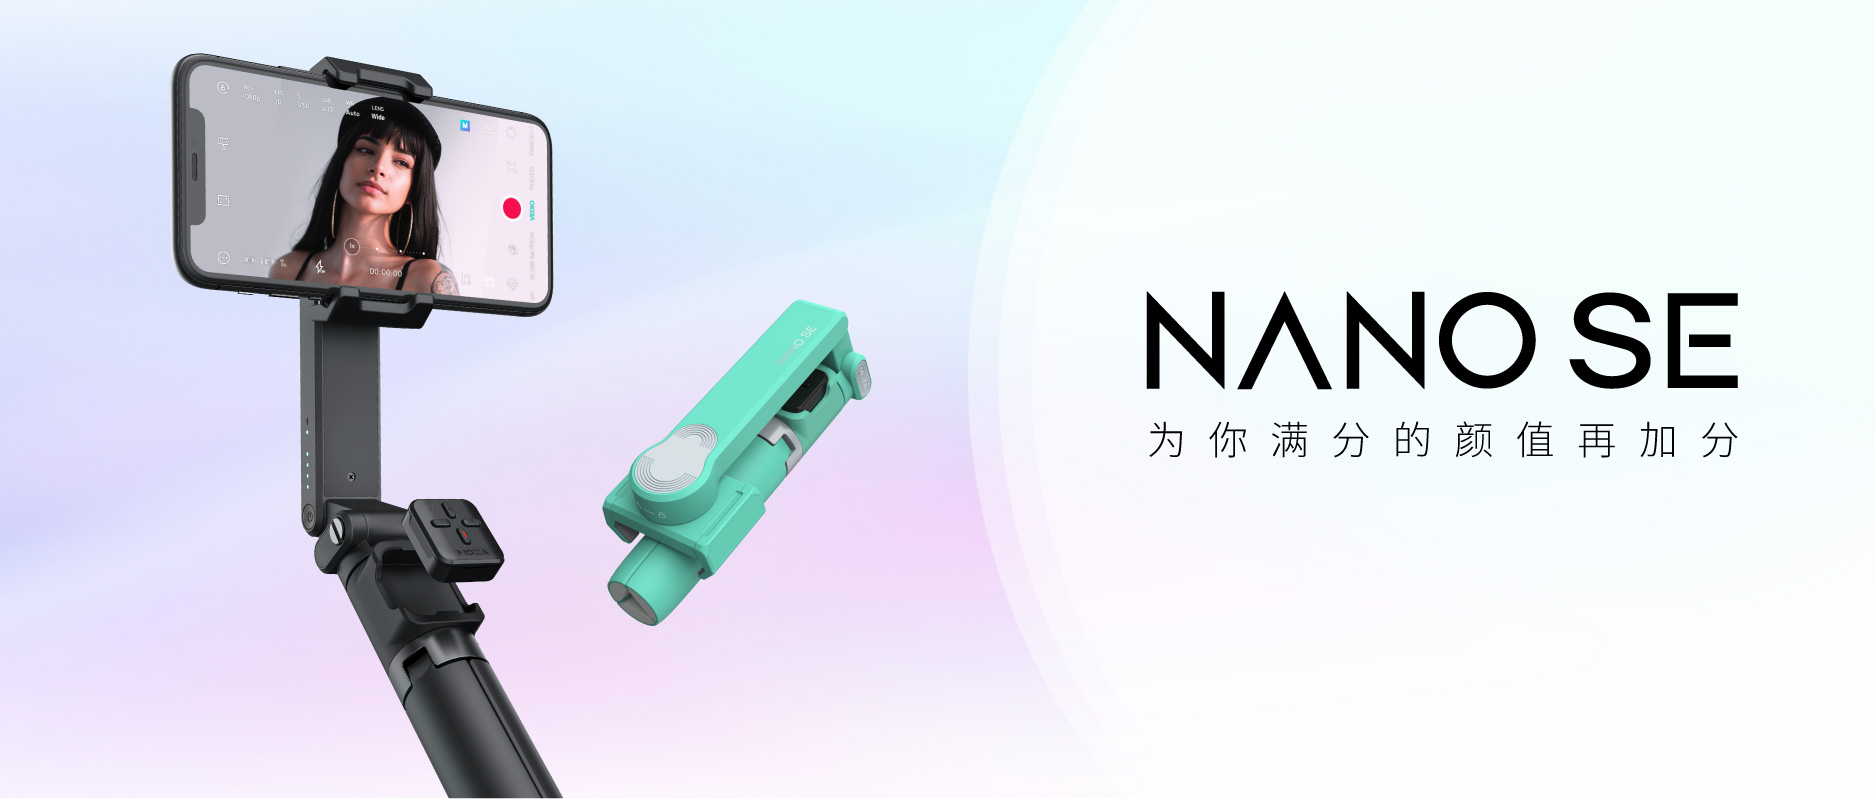 魔爪NANO SE正式上市，拓疆智能增稳自拍杆市场